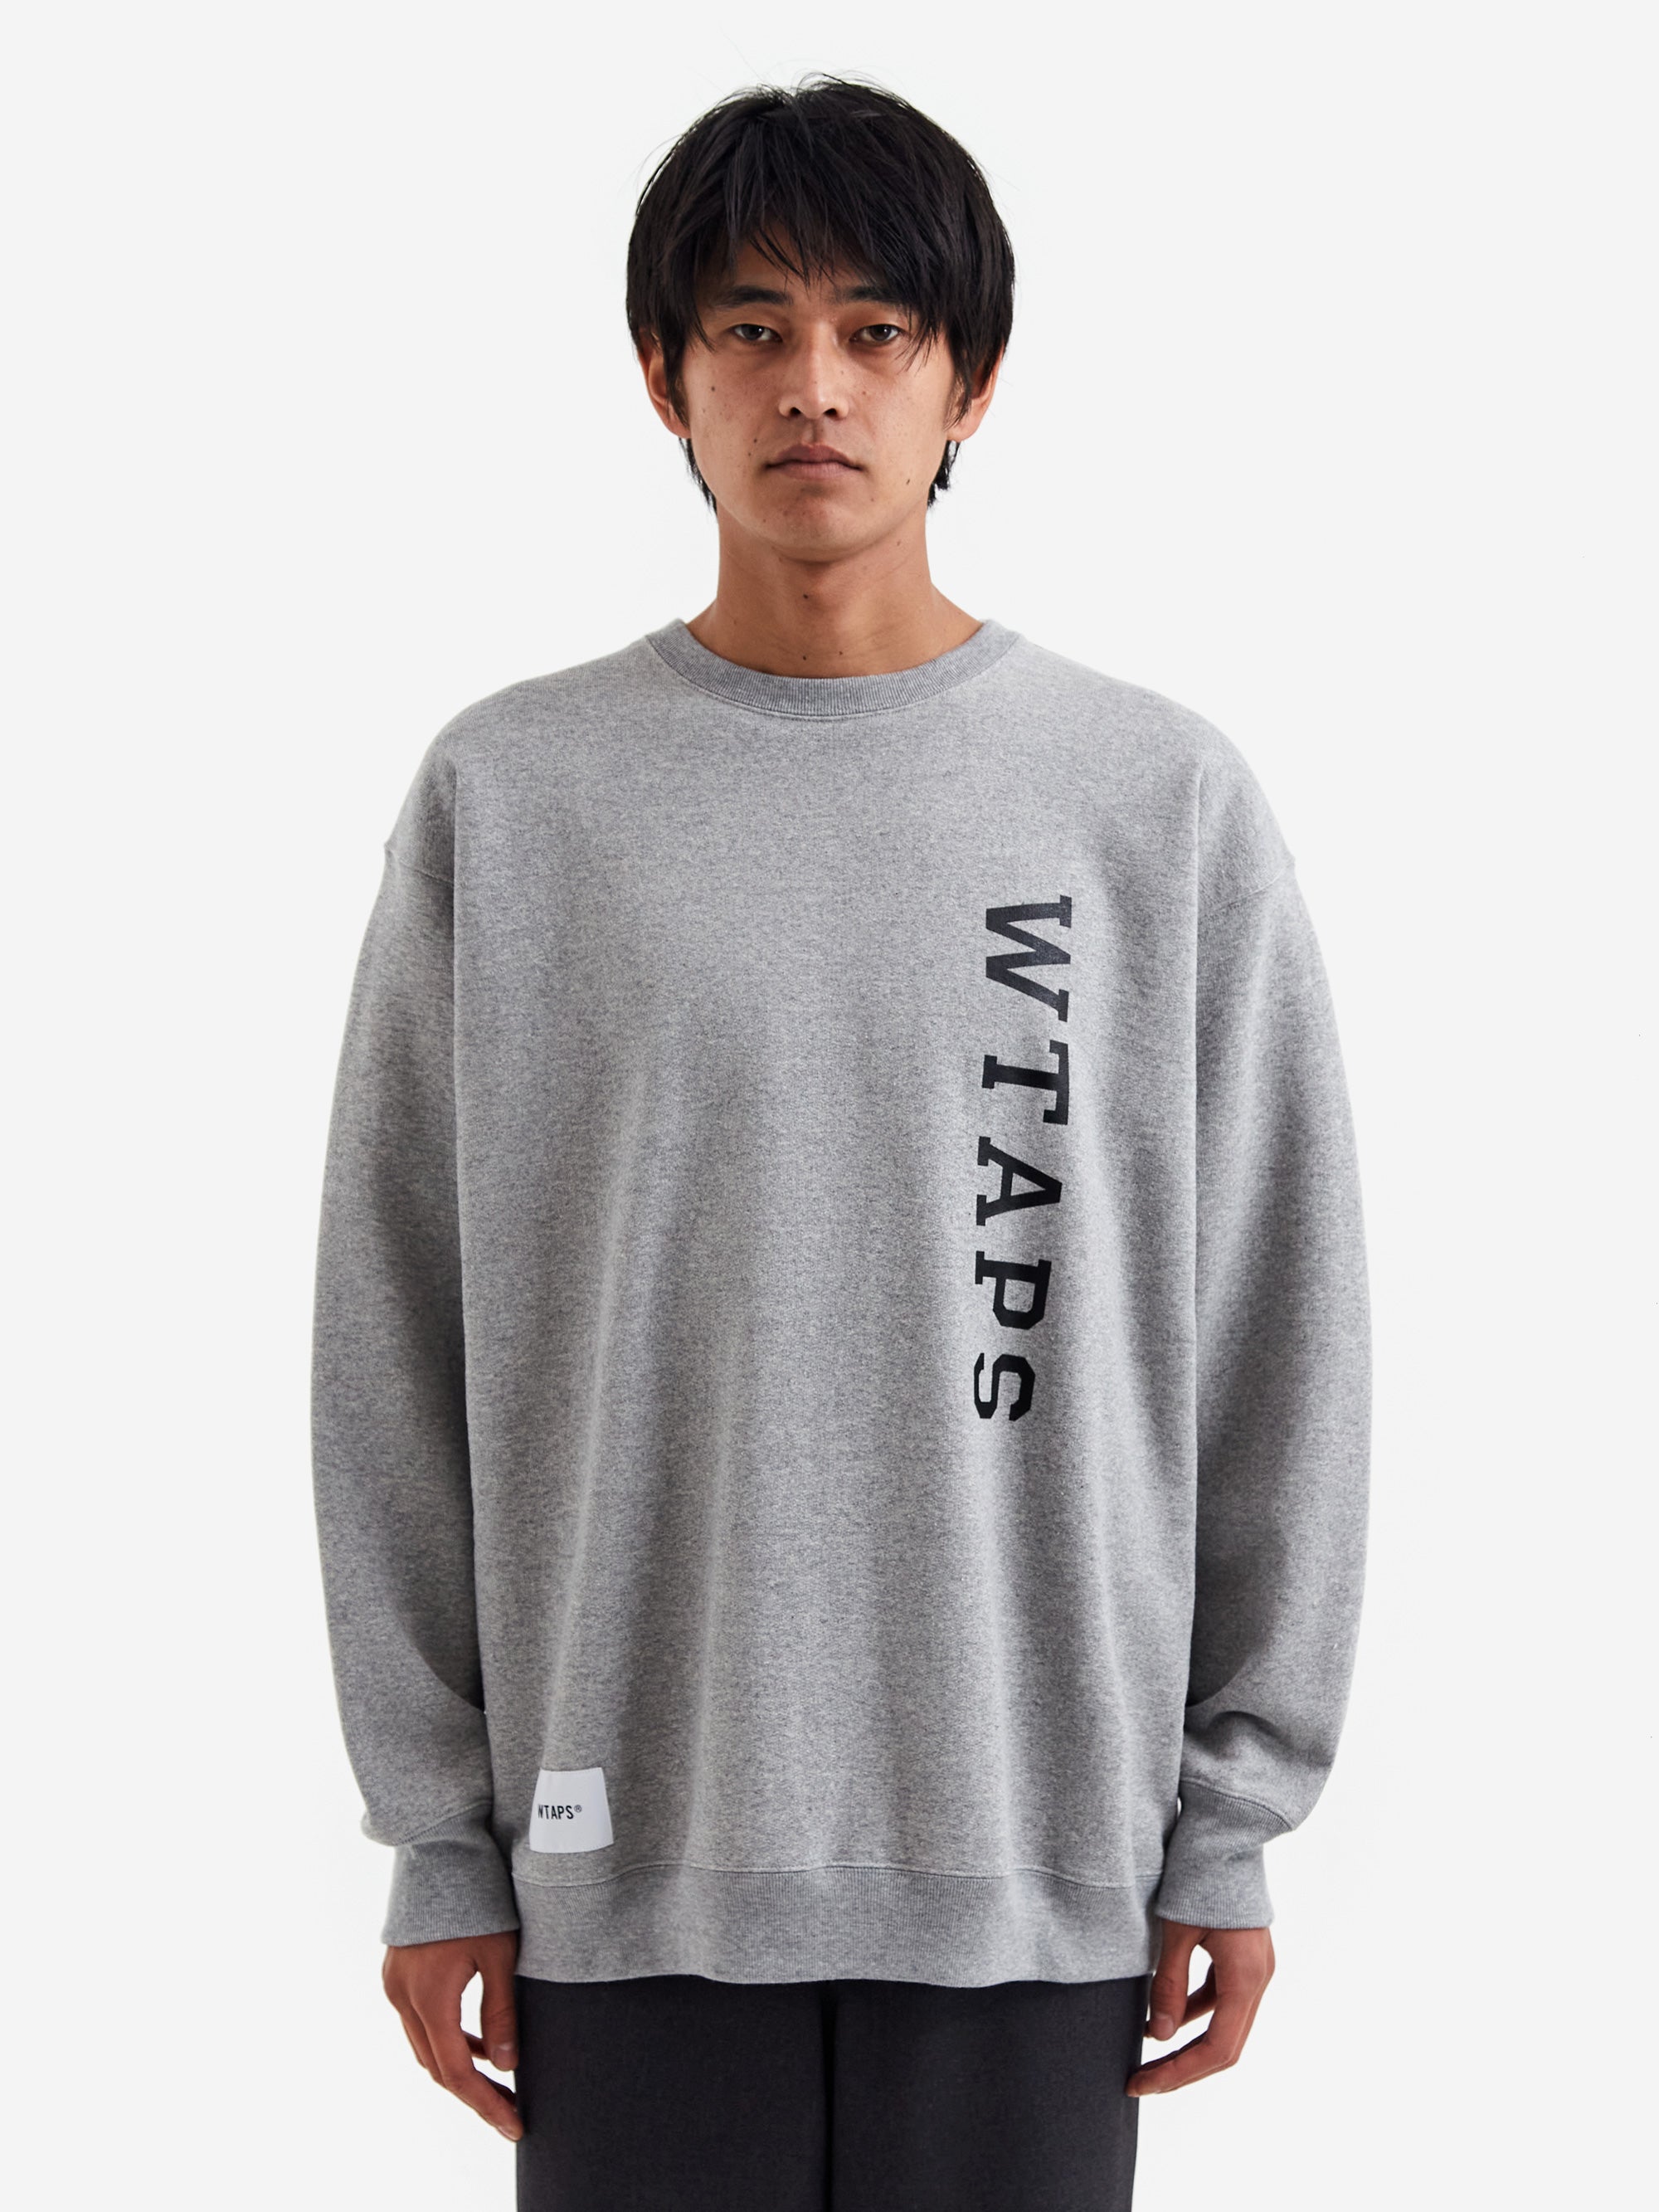 WTAPS Design 01 / Sweater / Cotton. College - Ash Gray